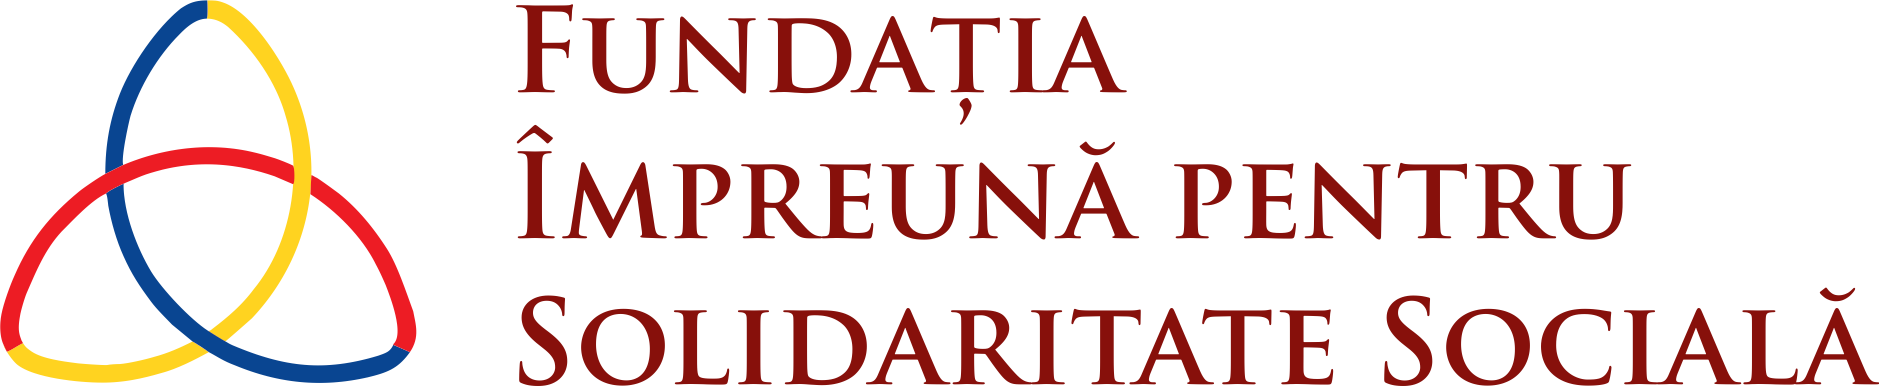 Fundația Impreună pentru Solidaritate Socială logo